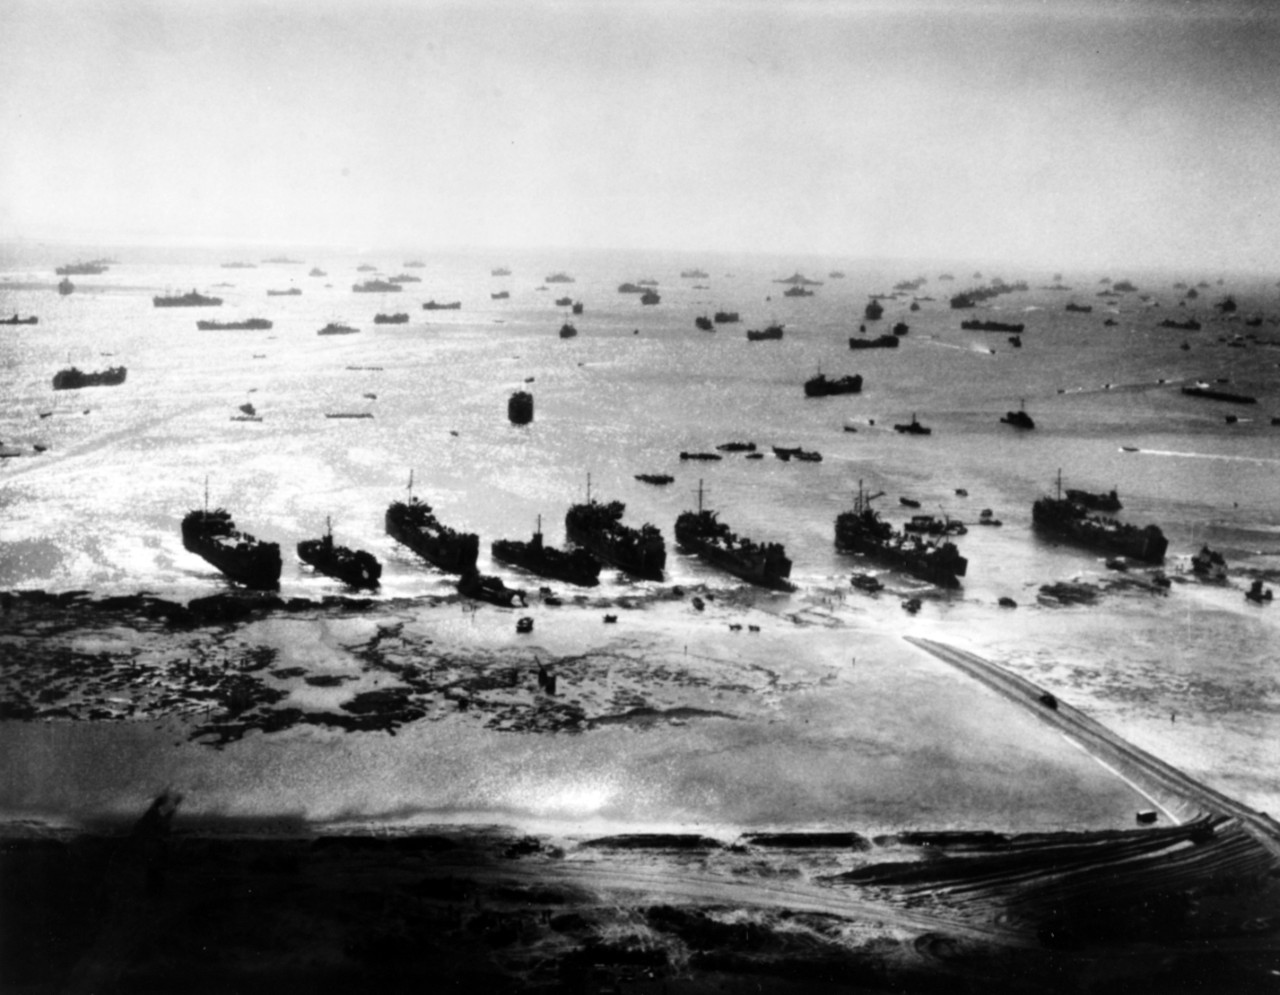 Okinawa Operation, 1945